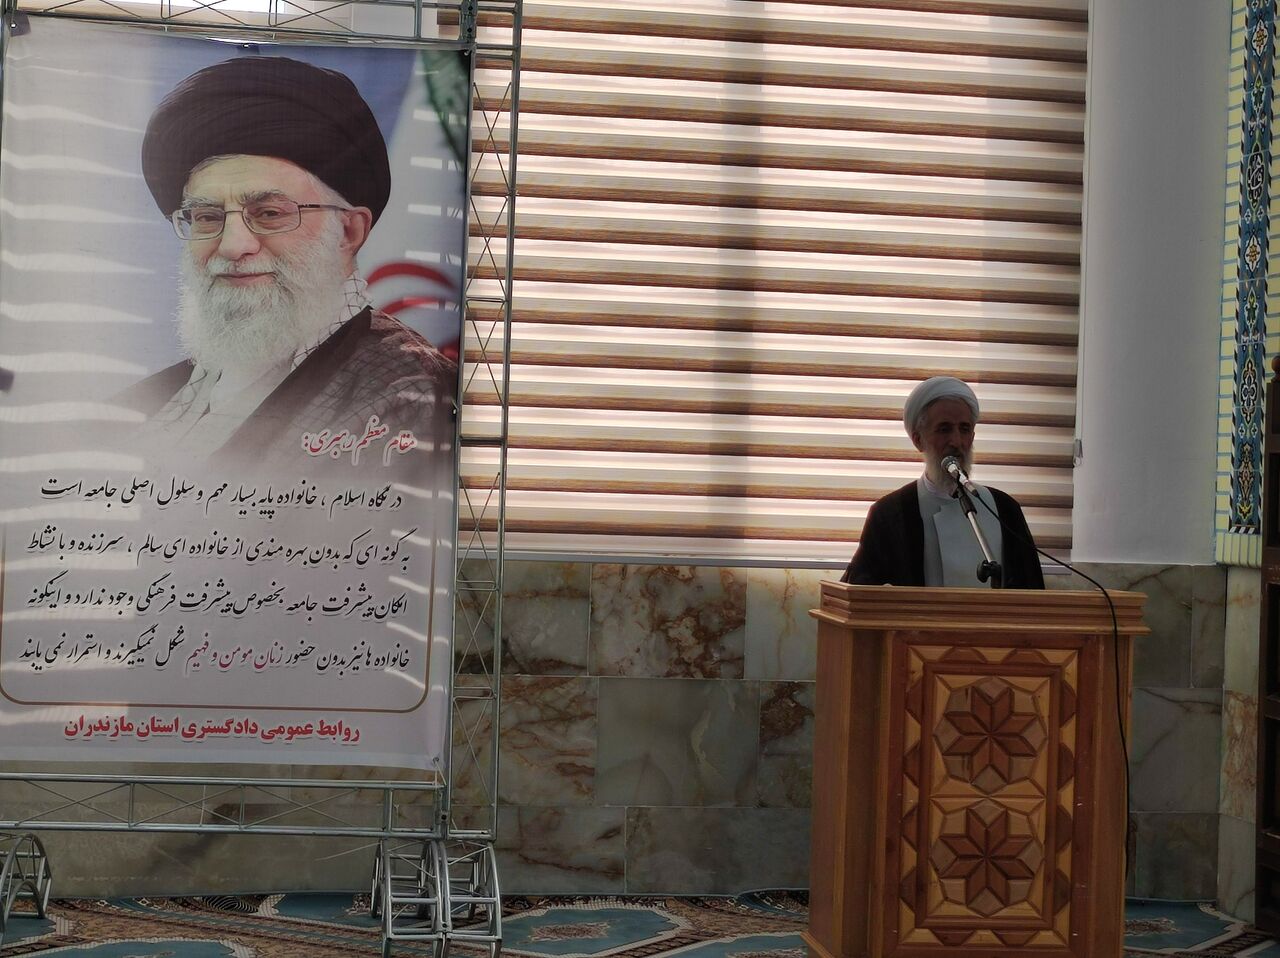  دشمنان از اقتدار نظام خانواده اسلامی و اخلاقی ایران هراس دارند